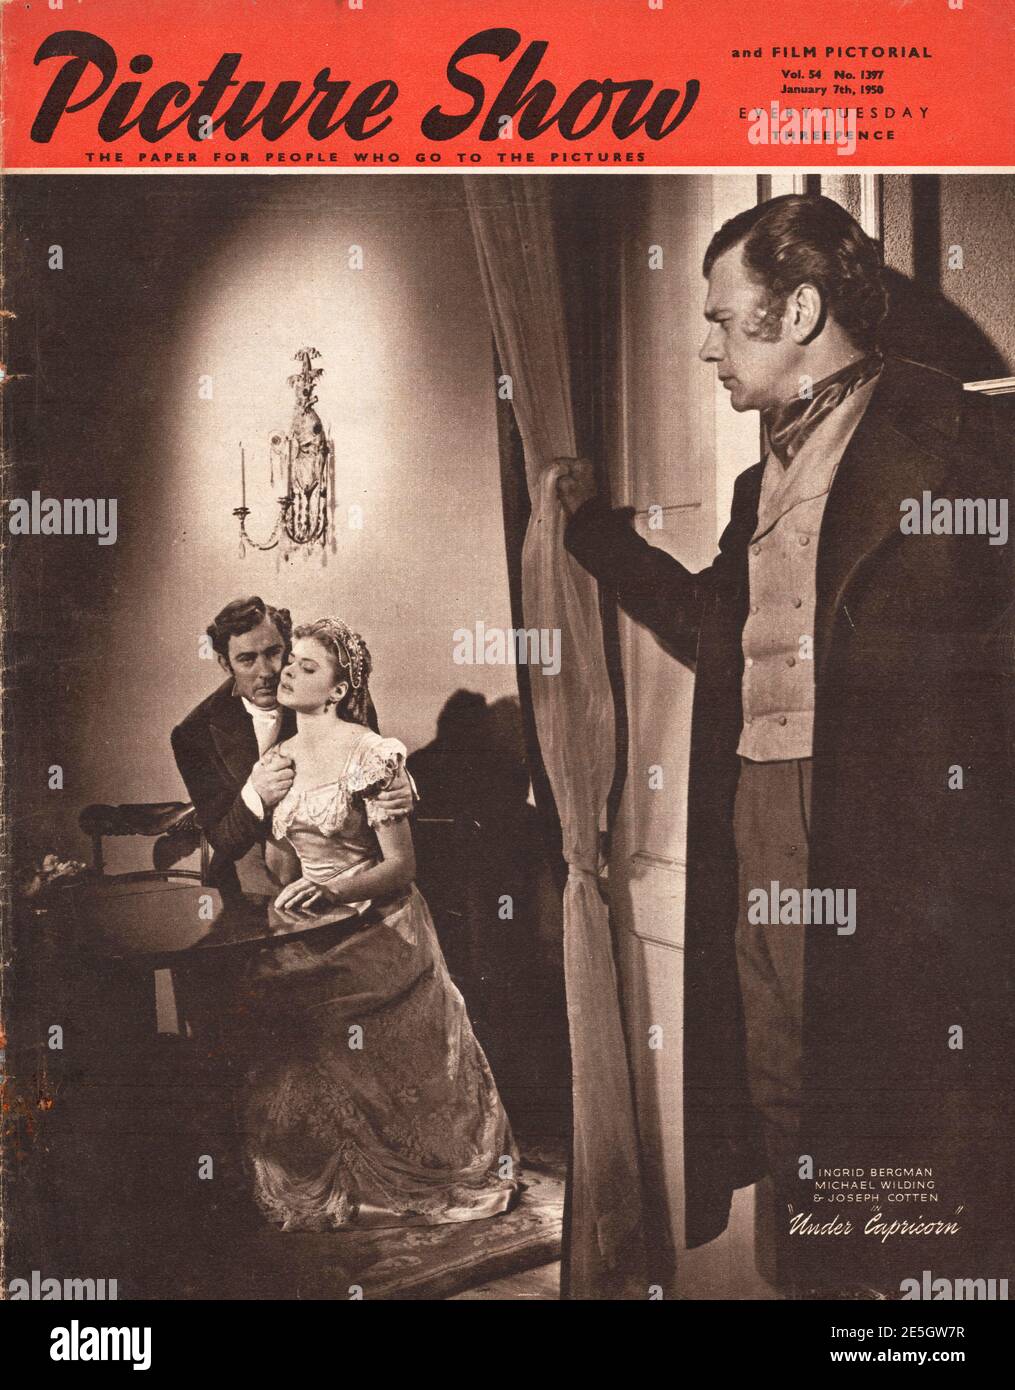 1950 Picture Show Ingrid Bergman Stock Photo